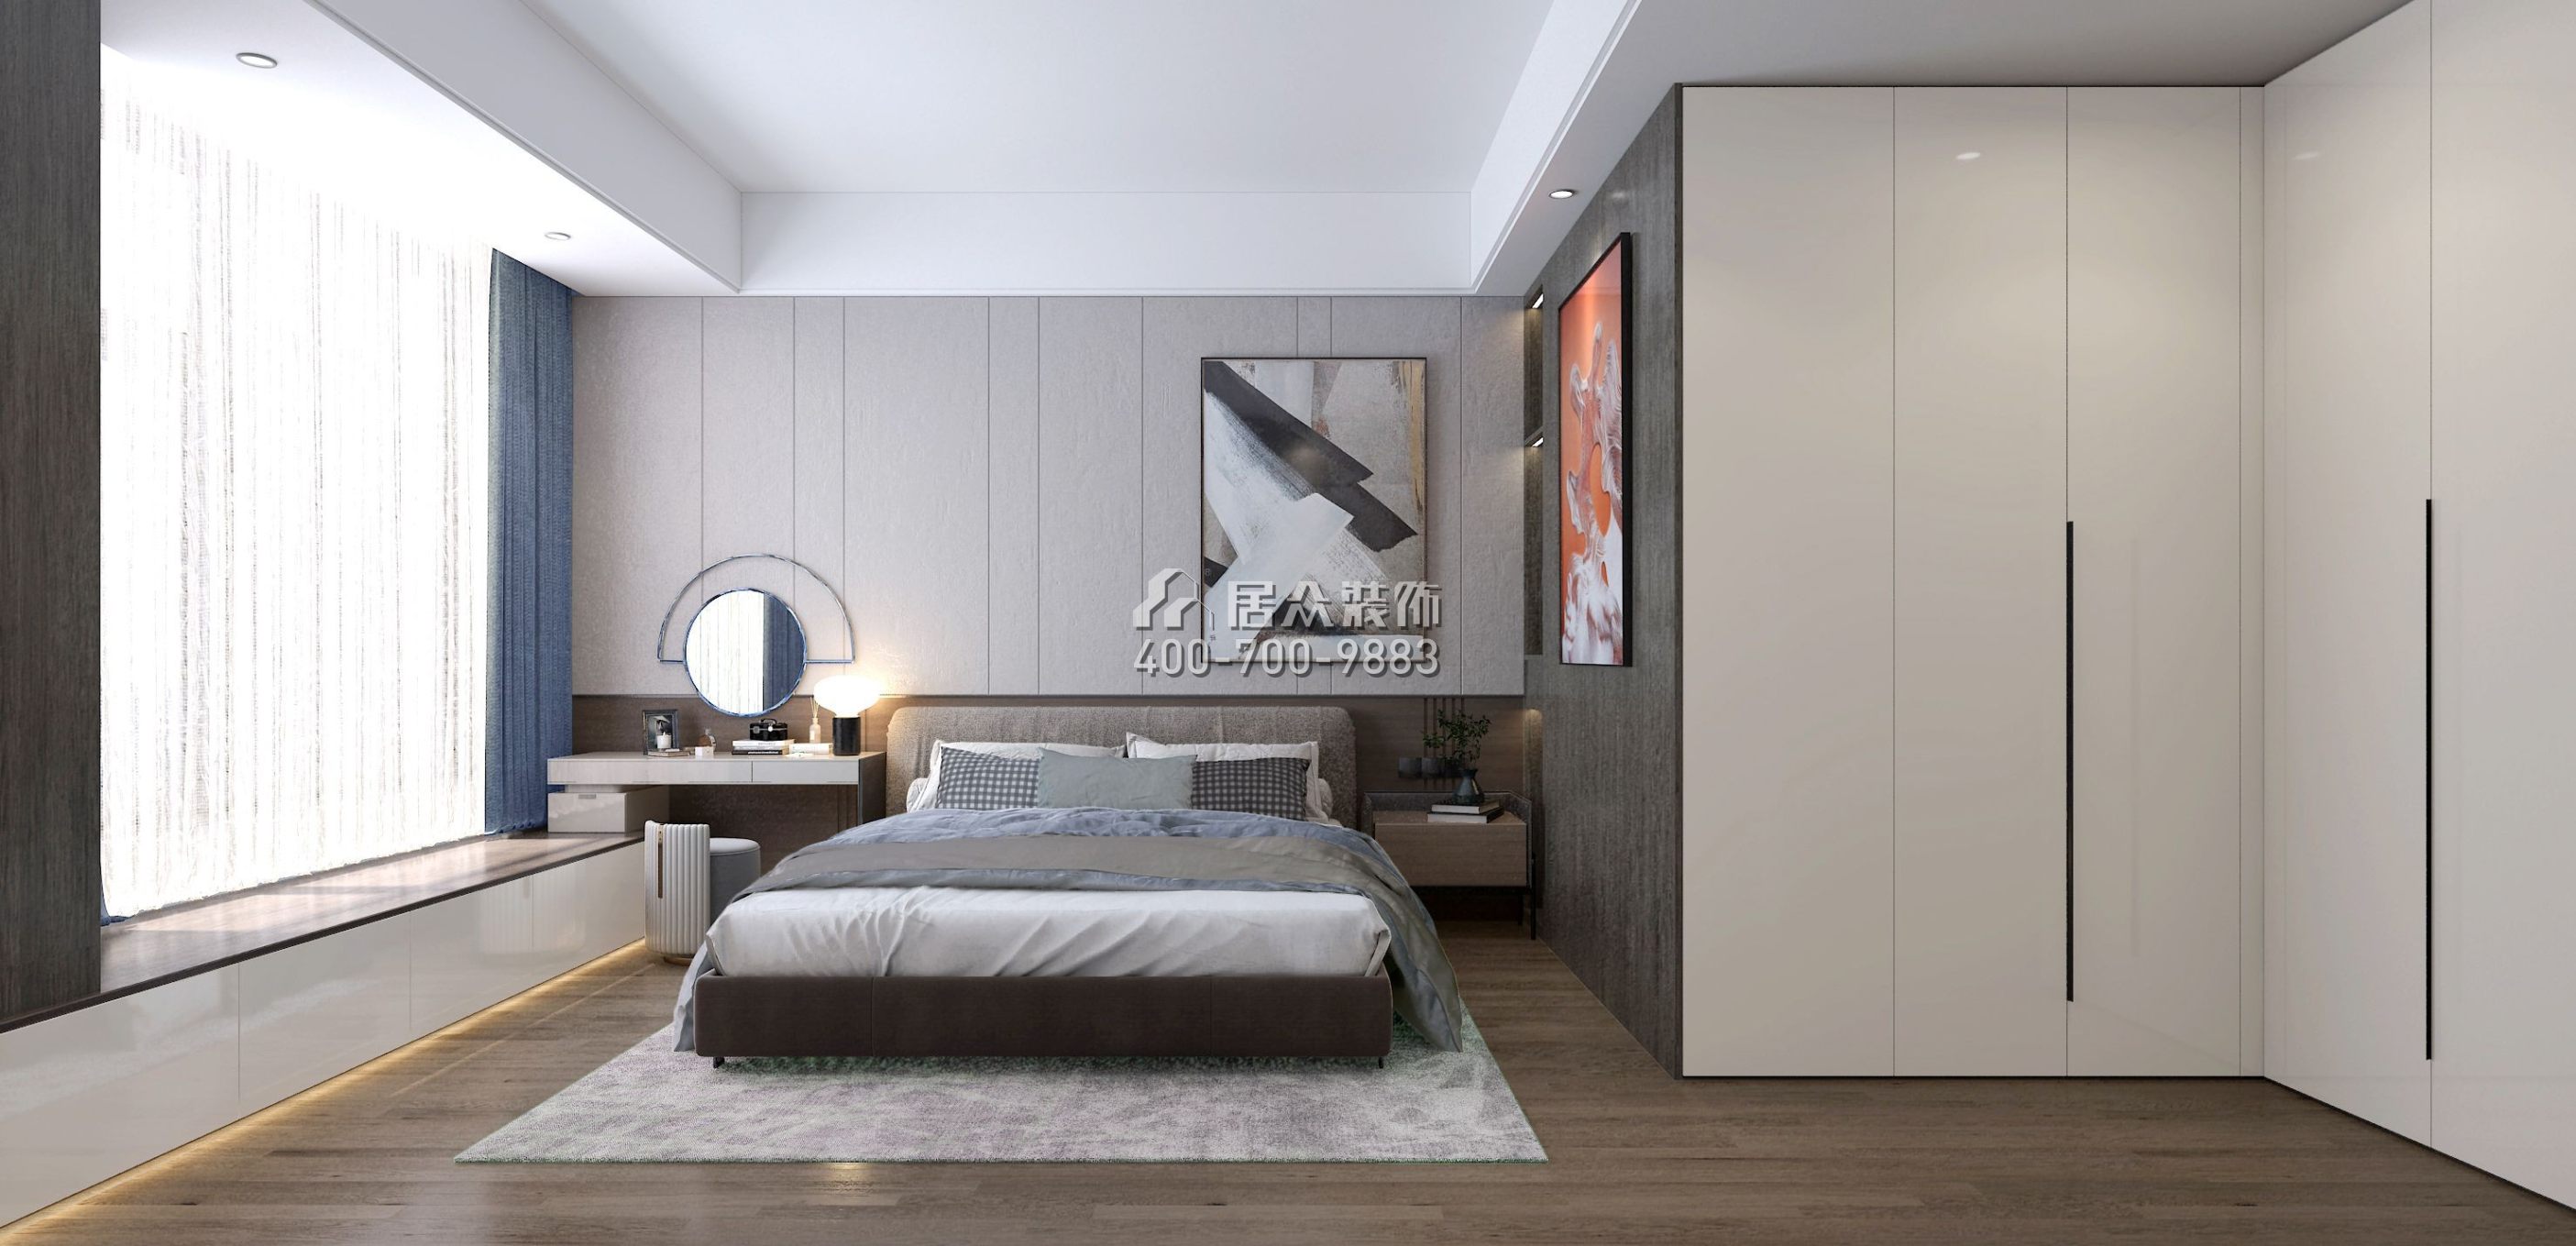 中泰财富湘江120平方米现代简约风格平层户型卧室装修效果图